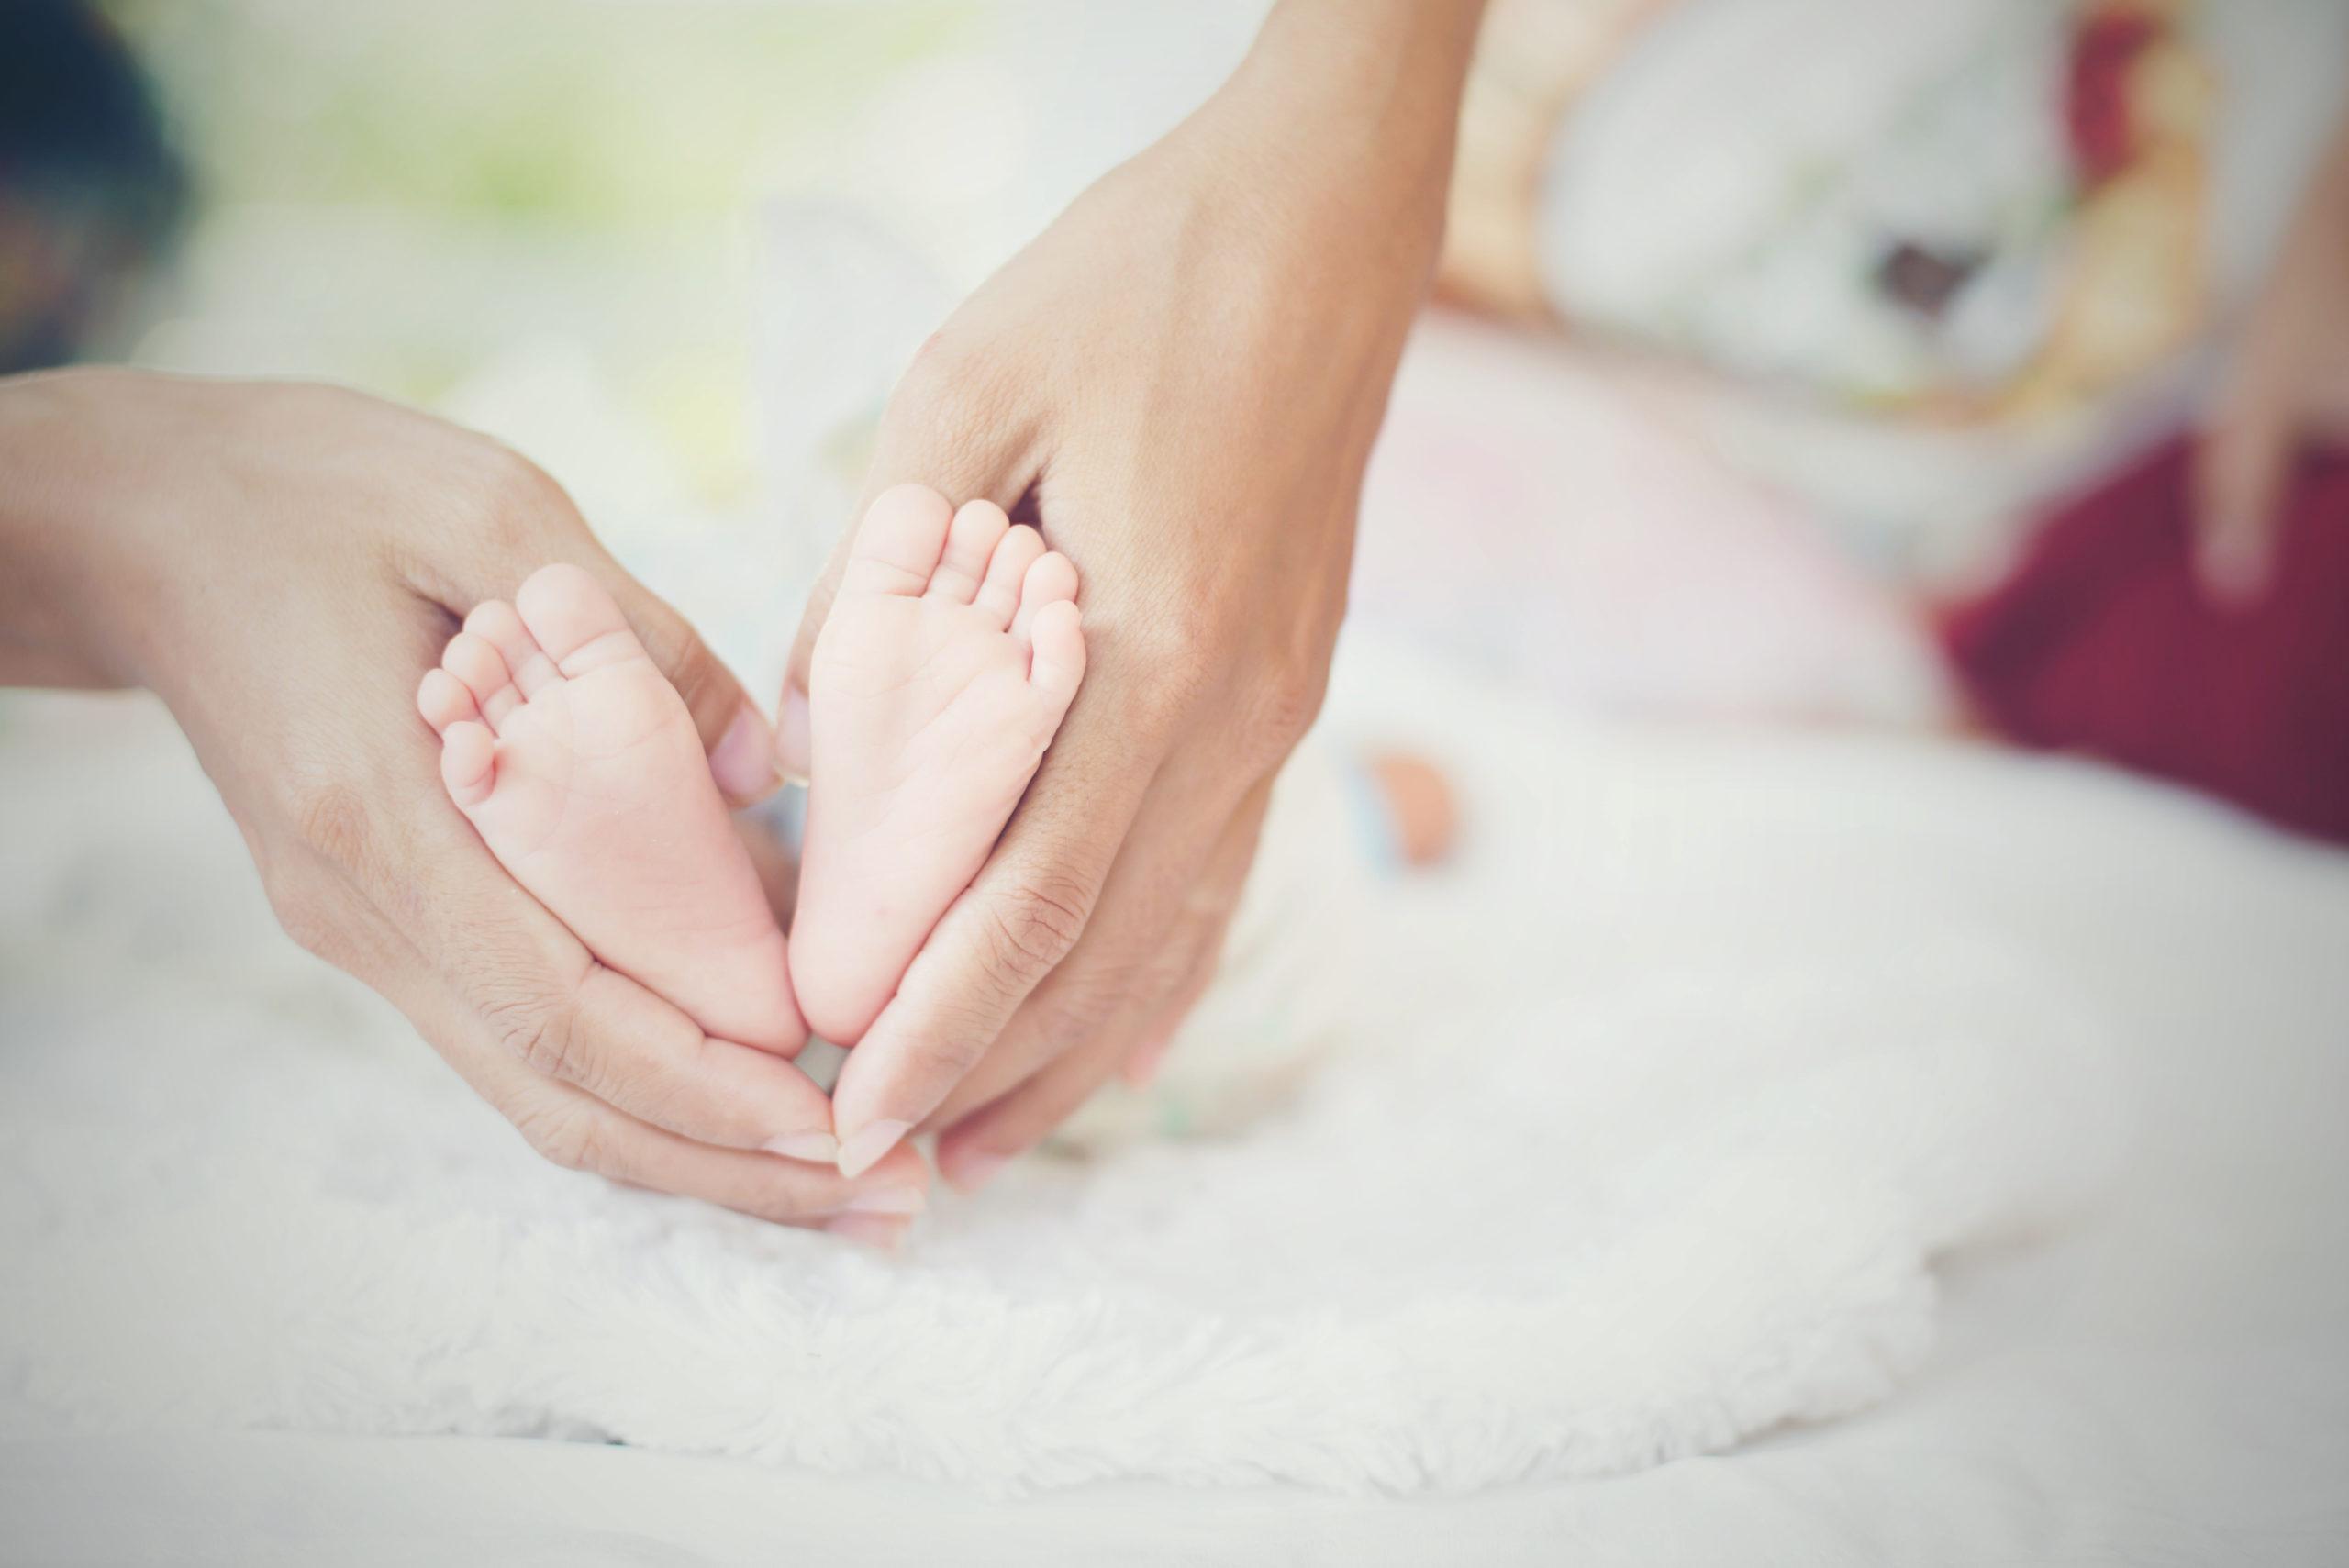 A triagem neonatal ou teste do pezinho é de extrema importância para a saúde do bebê